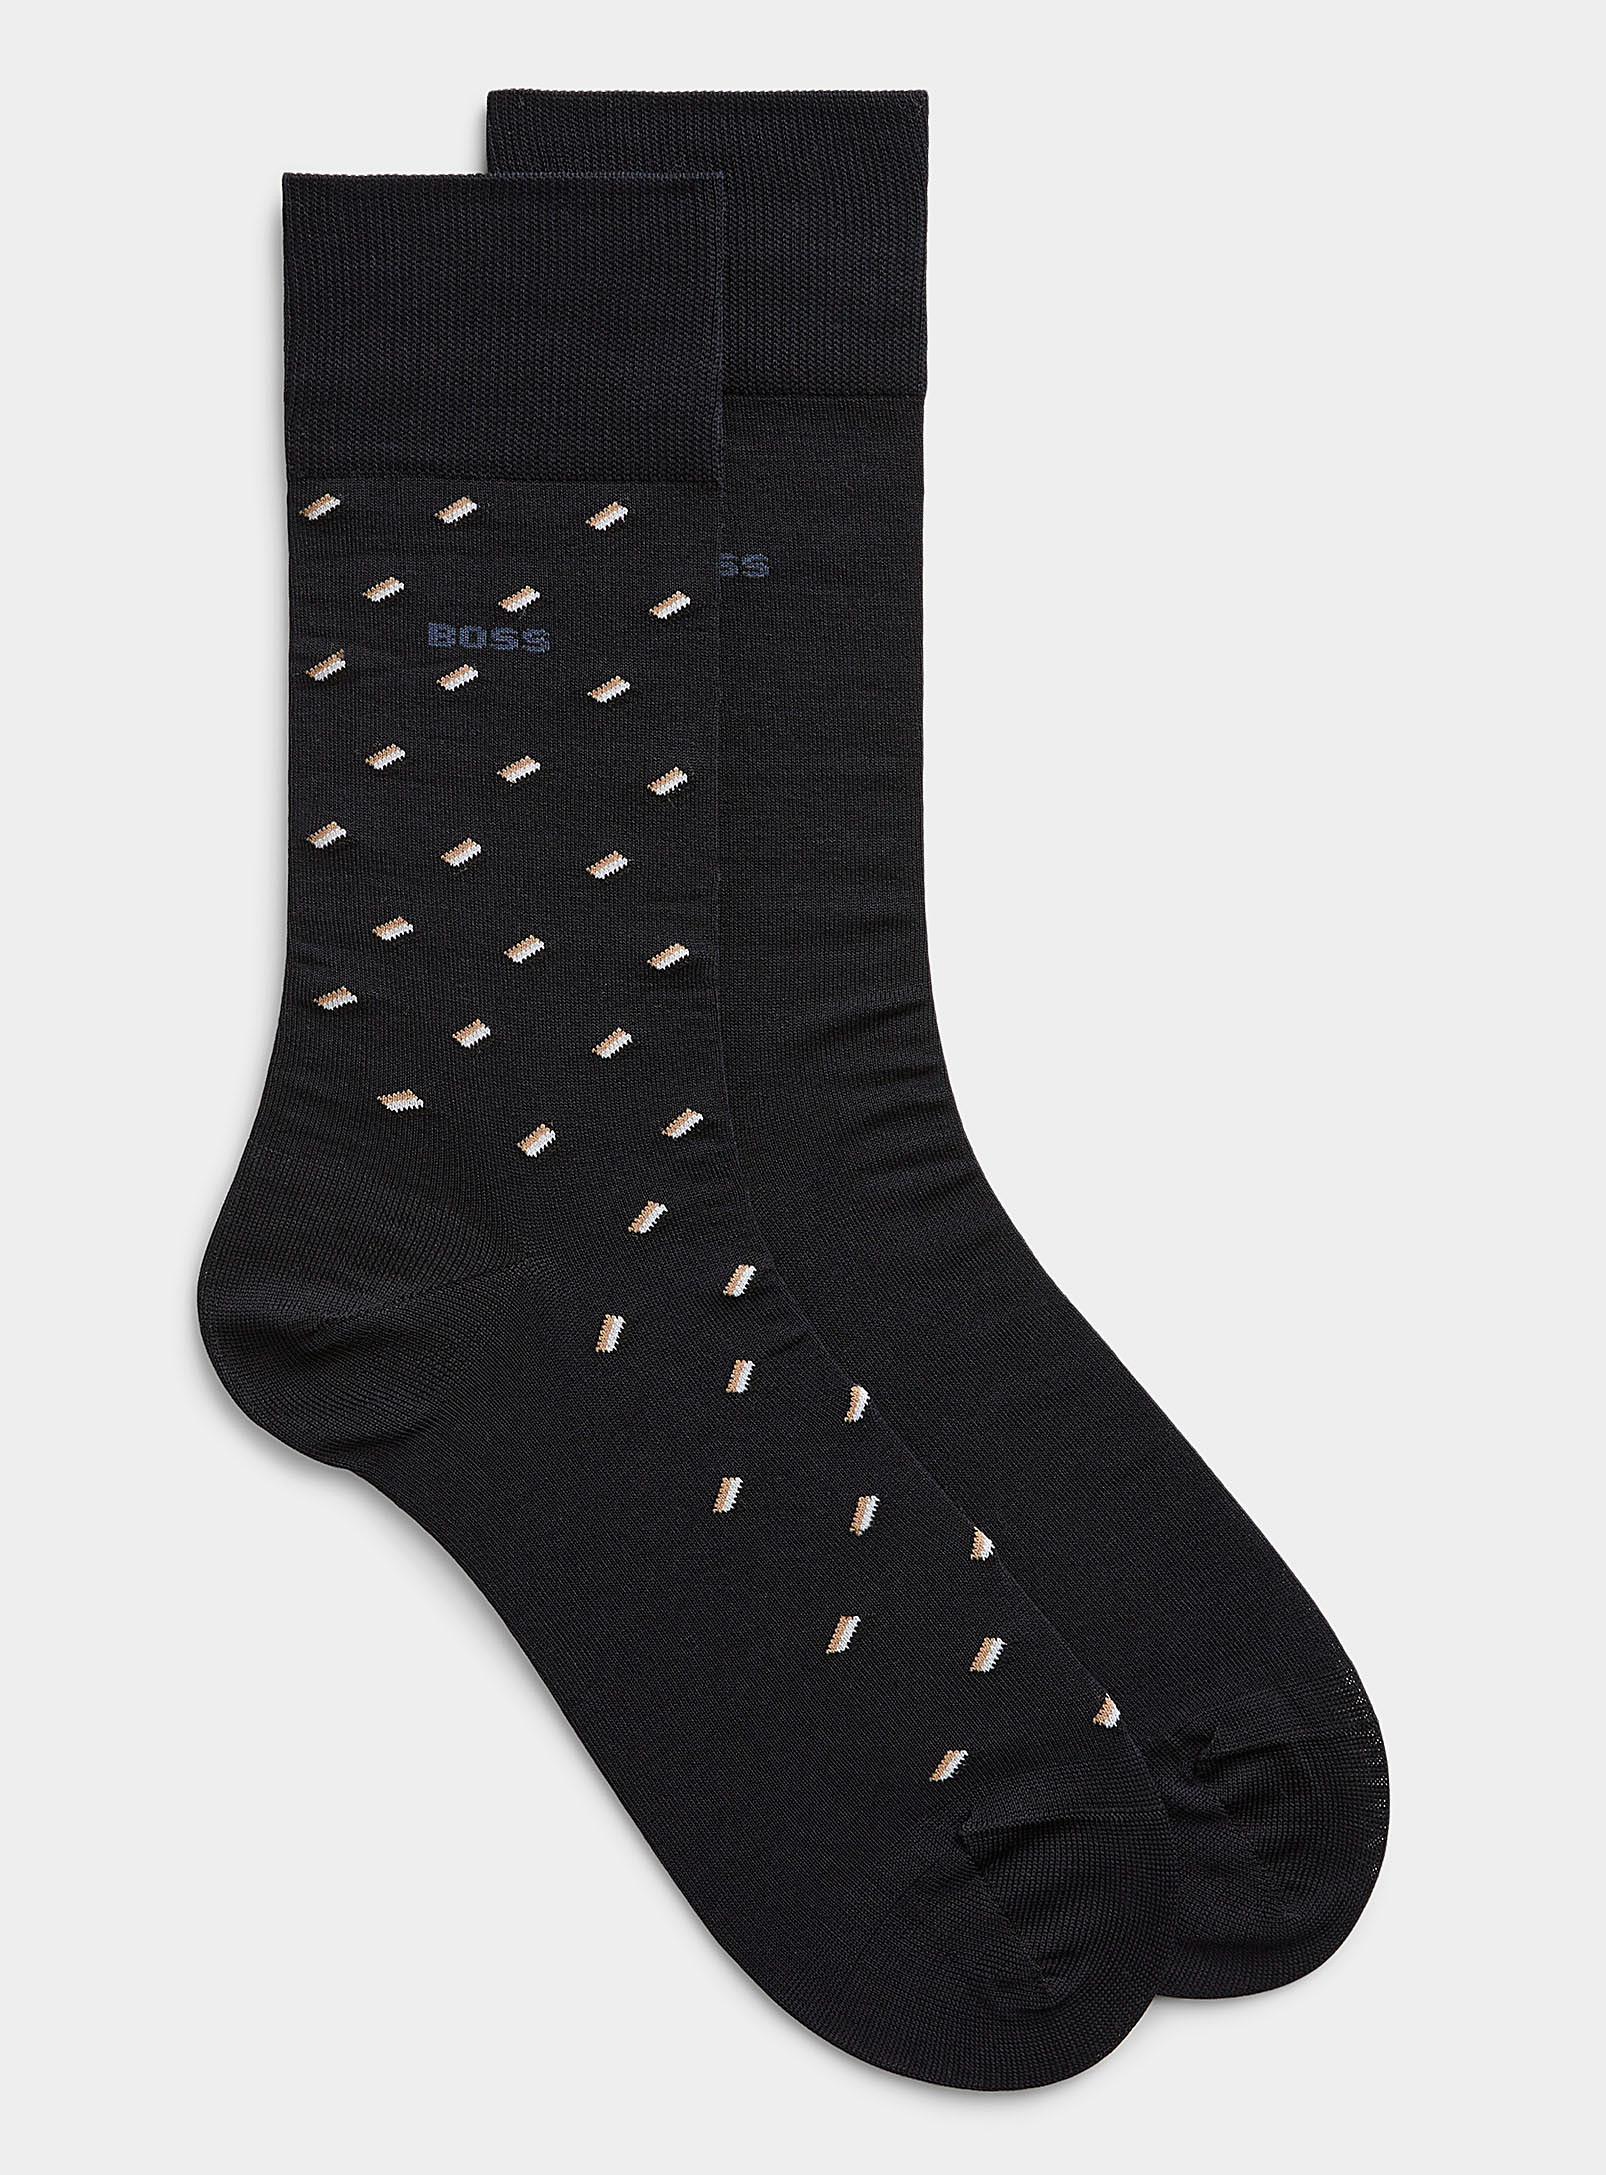 BOSS - Les chaussettes logo confettis et unies Ensemble de 2